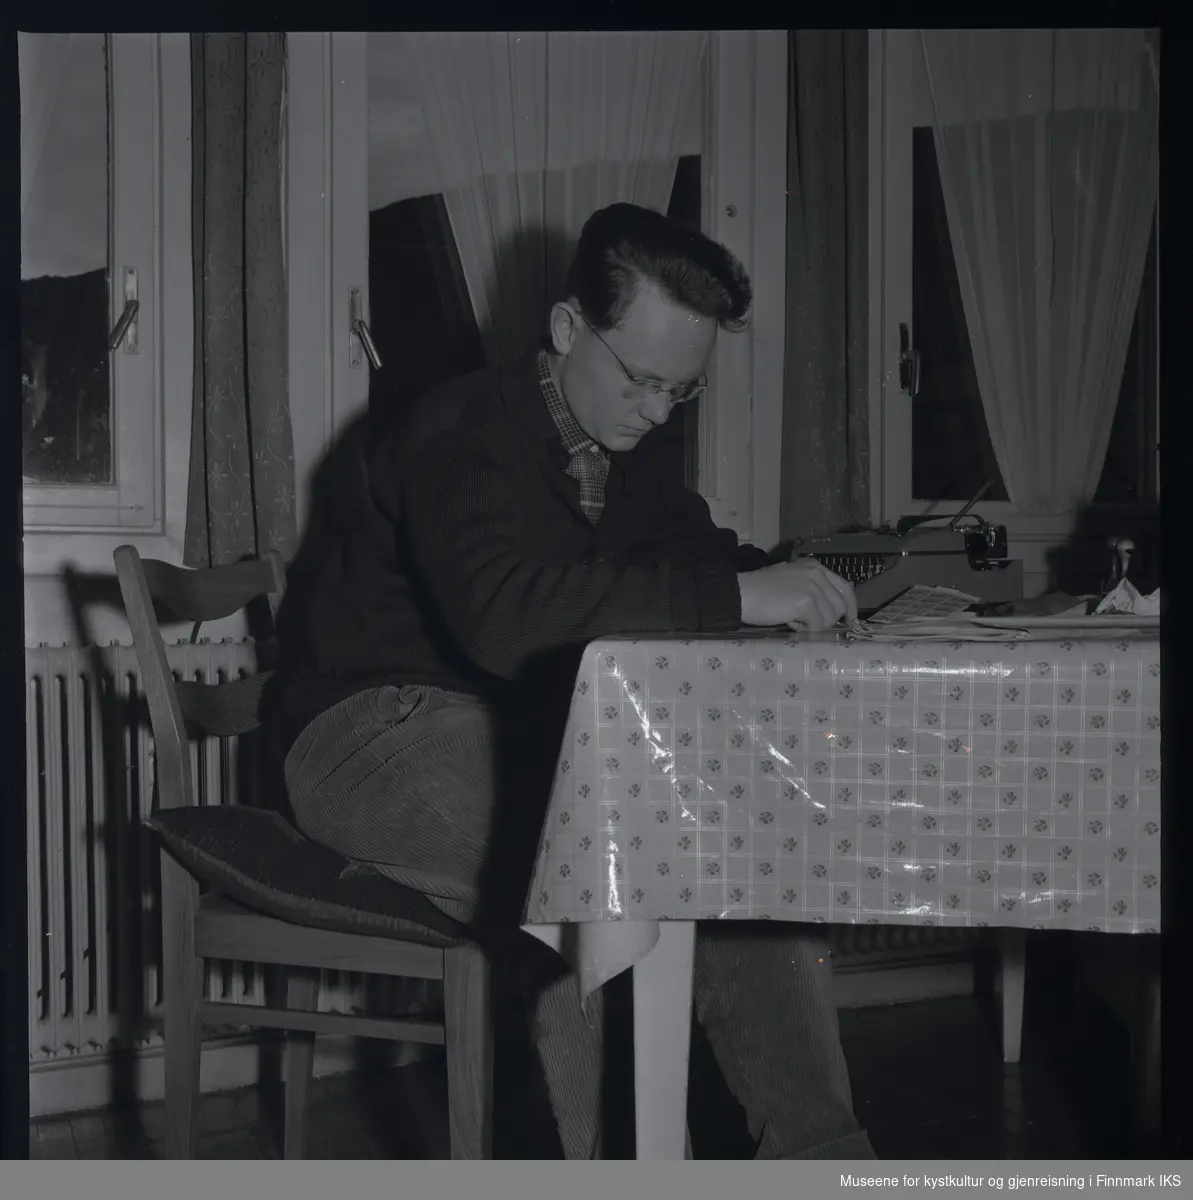 Friedrich Hörl sitter ved et bord og leser. På bordet, som er dekket med en voksduk, er det plassert en skrivemaskin, stempler og frimerker, samt en avis. Den unge mannen har en brille og er ikledd fløyelsbukse, rutet skjorte og strikket jakke.